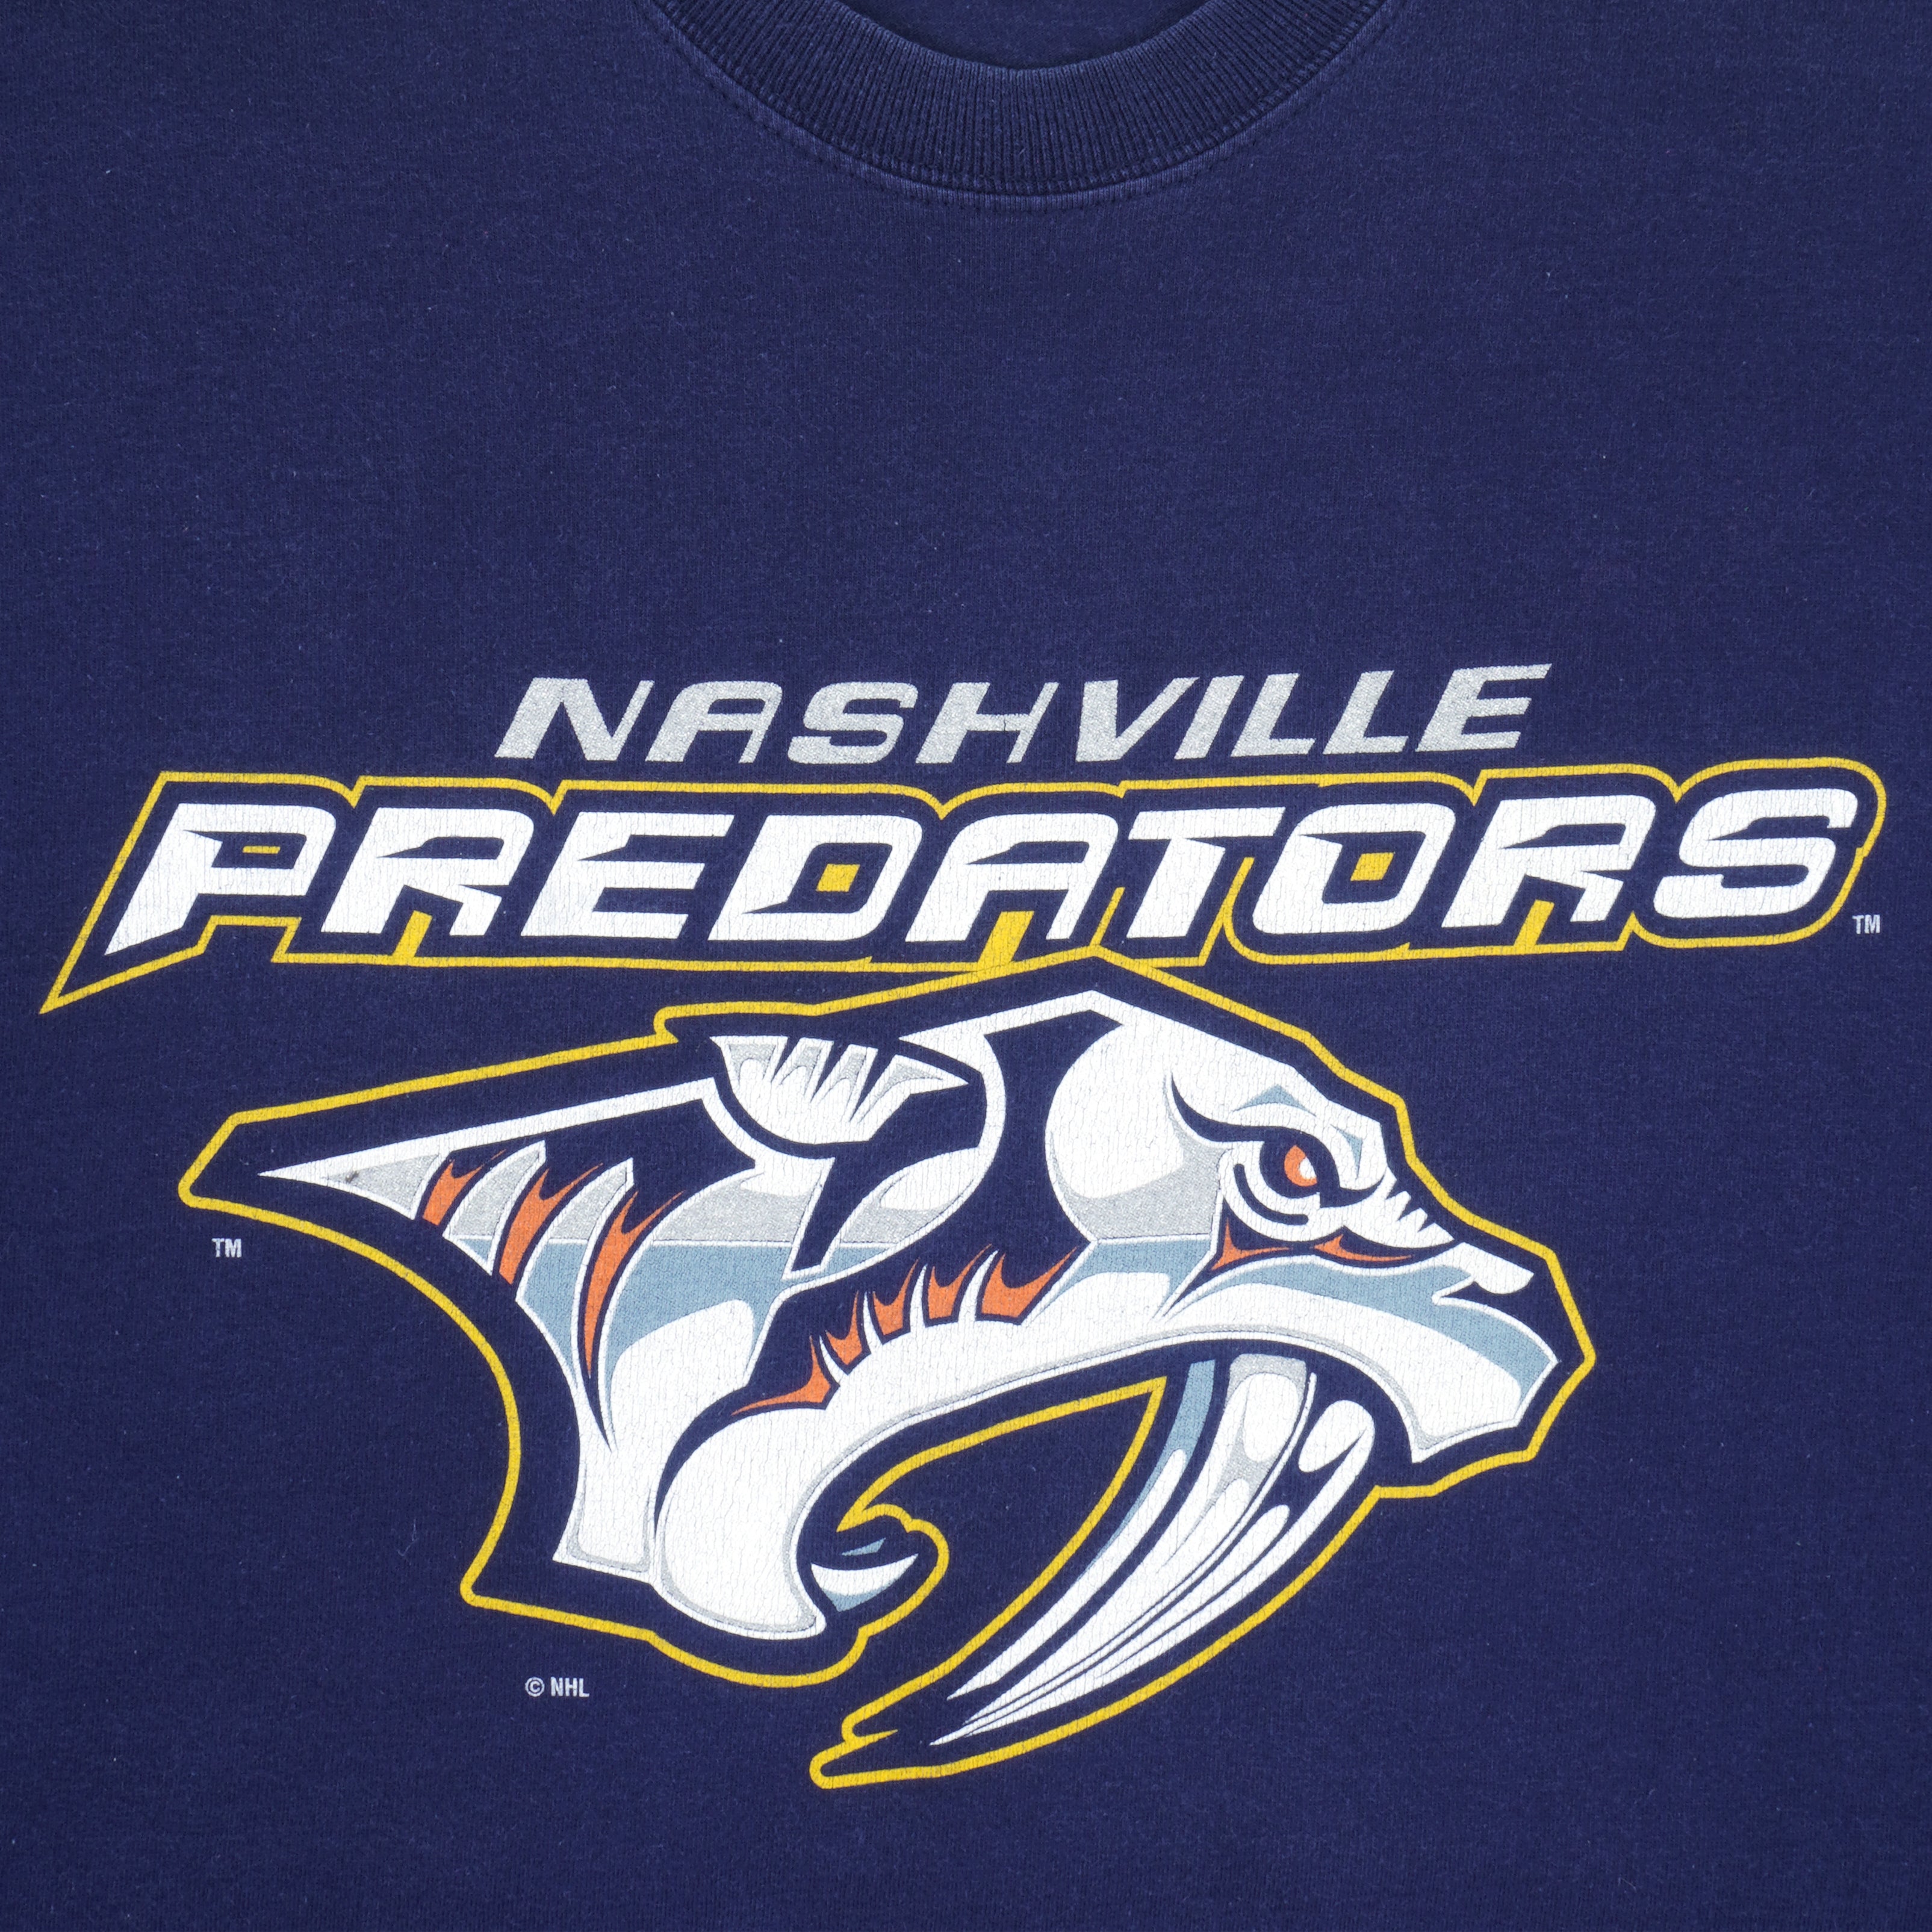 Nashville Predators Apparel, Predators Gear, Nashville Predators